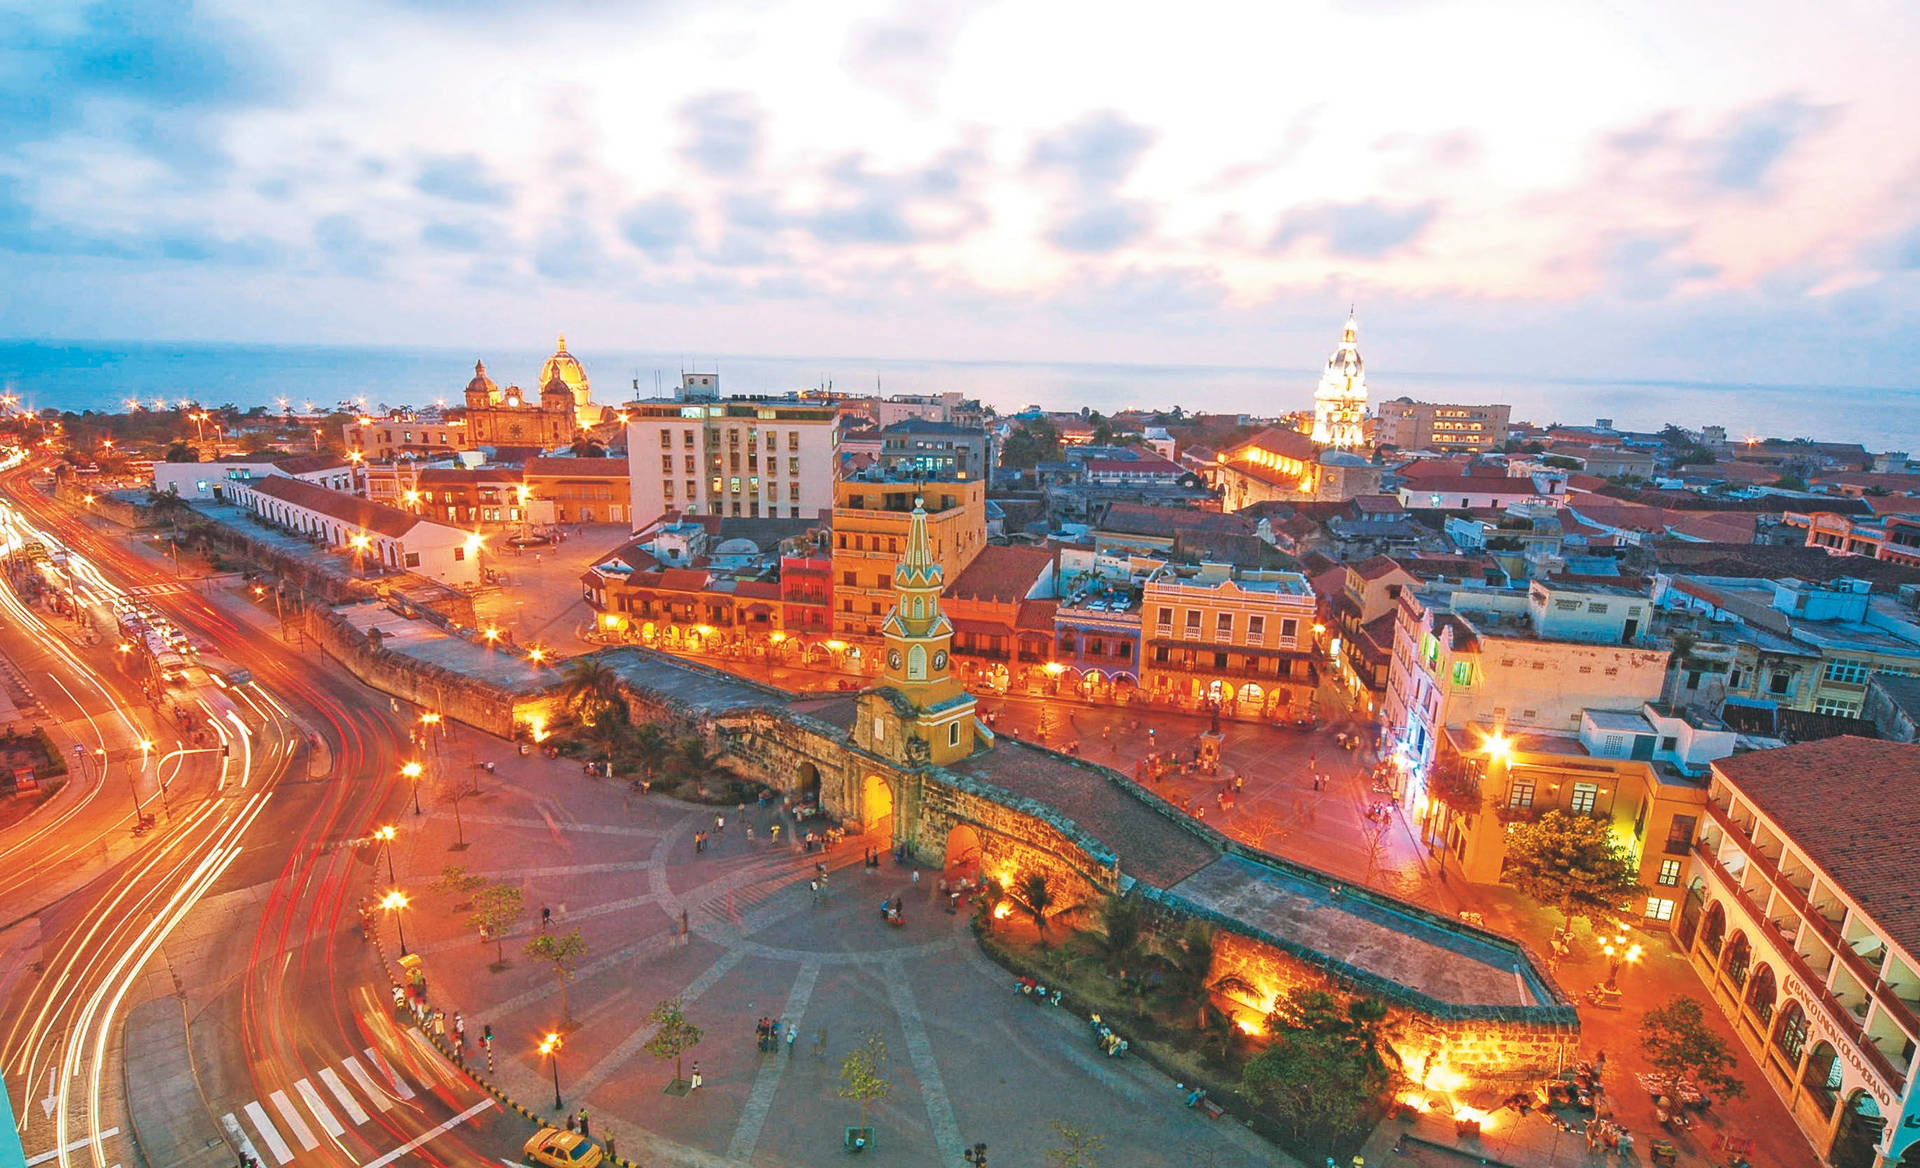 Ciudad Amurallada Cartagena Aerial View Wallpaper